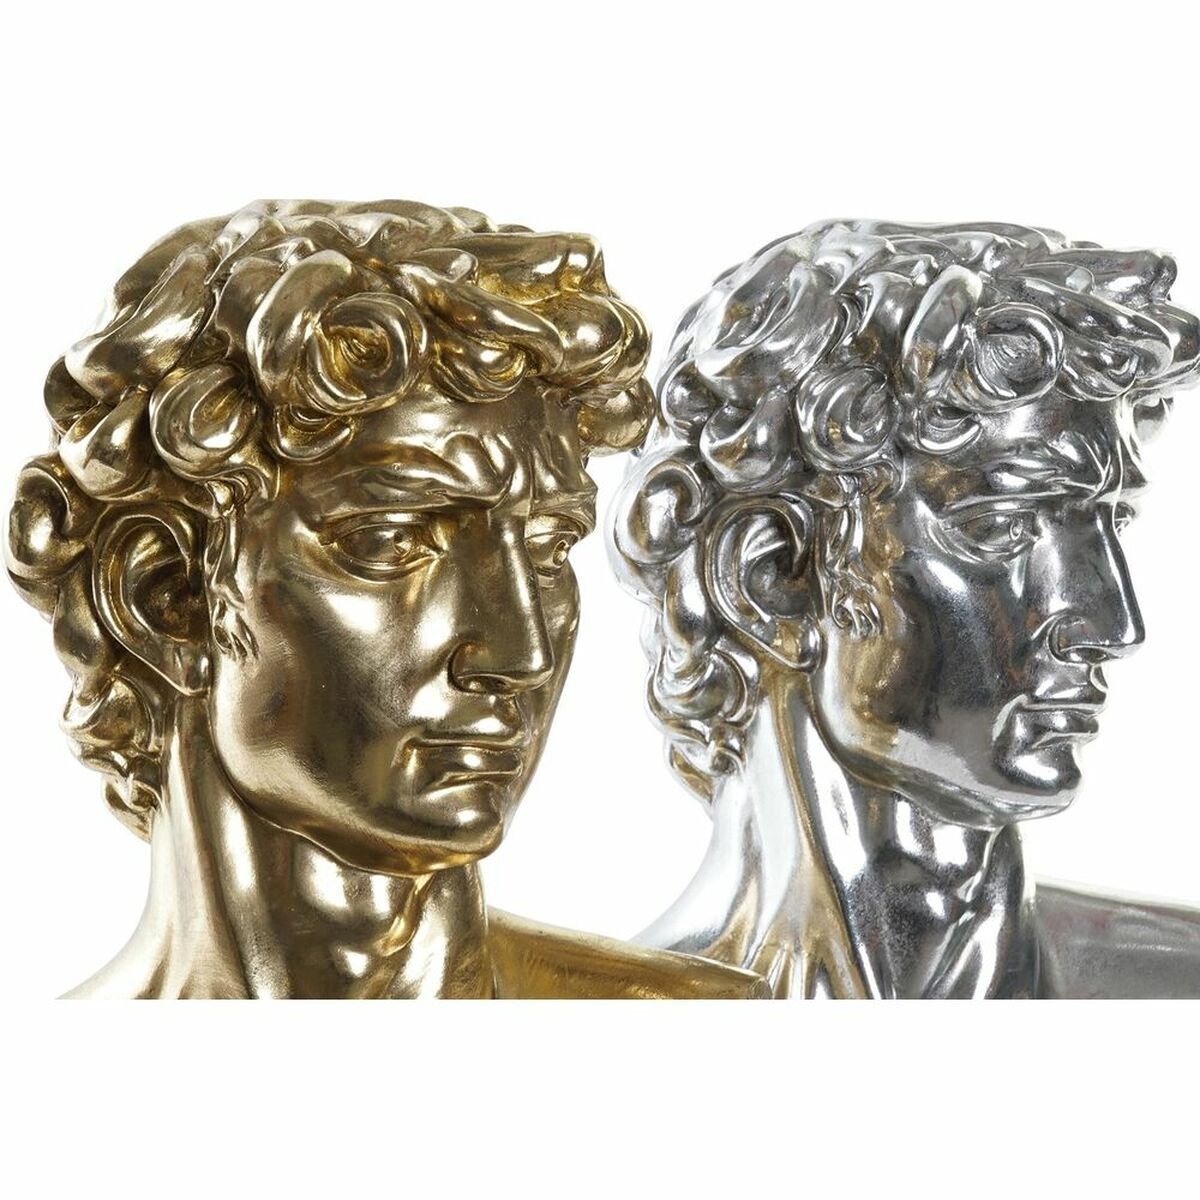 David sølv og guld 24,5 x 17,5 x 36 cm